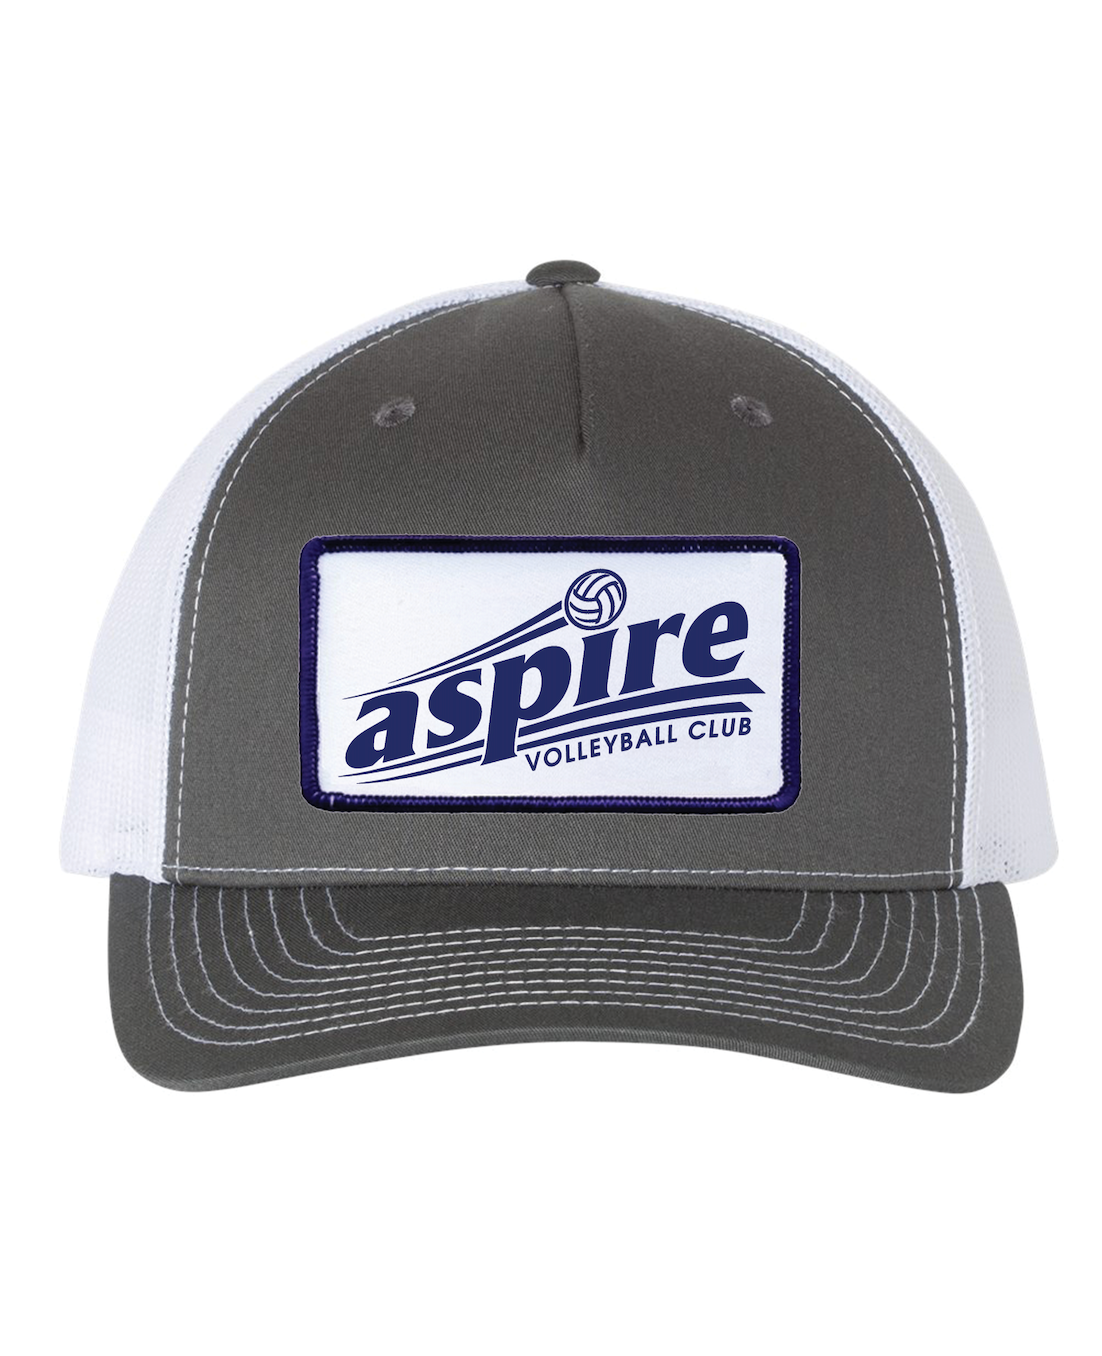 Aspire Volleyball Trucker Hat